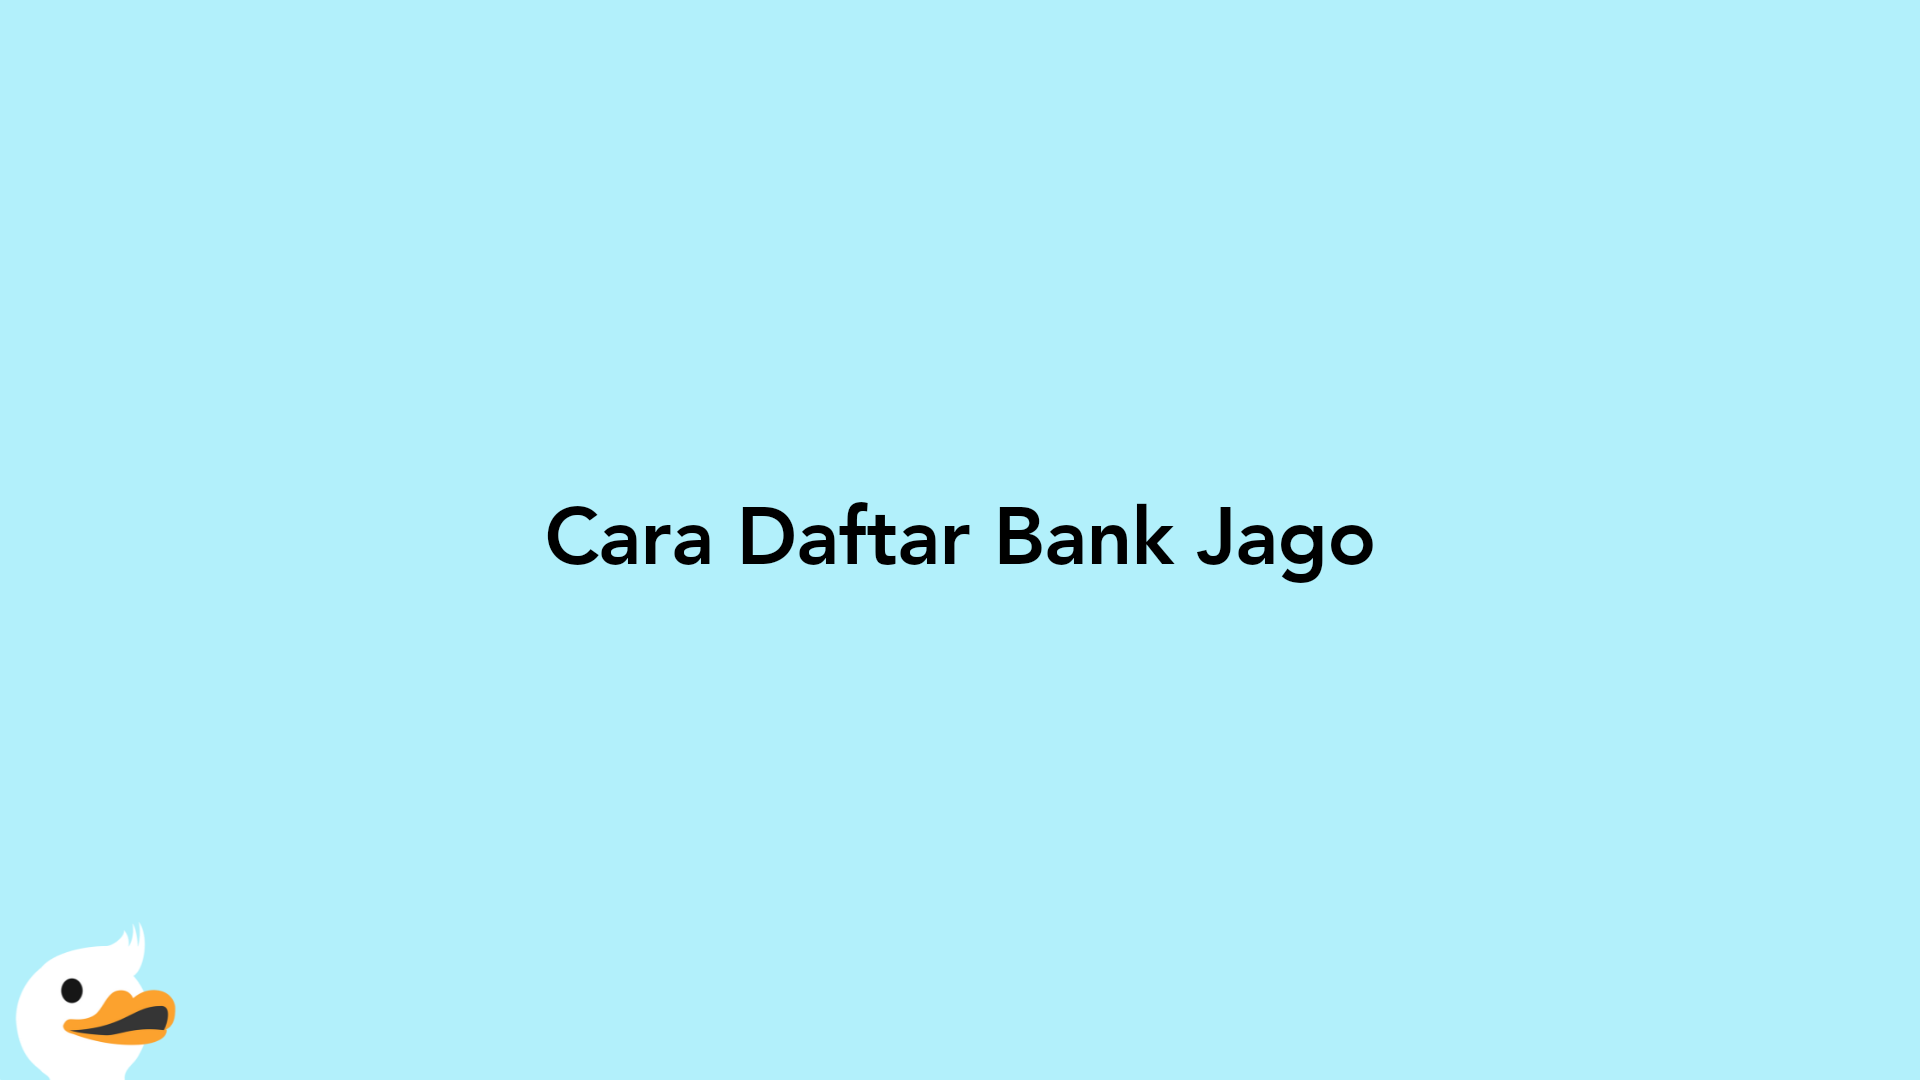 Cara Daftar Bank Jago